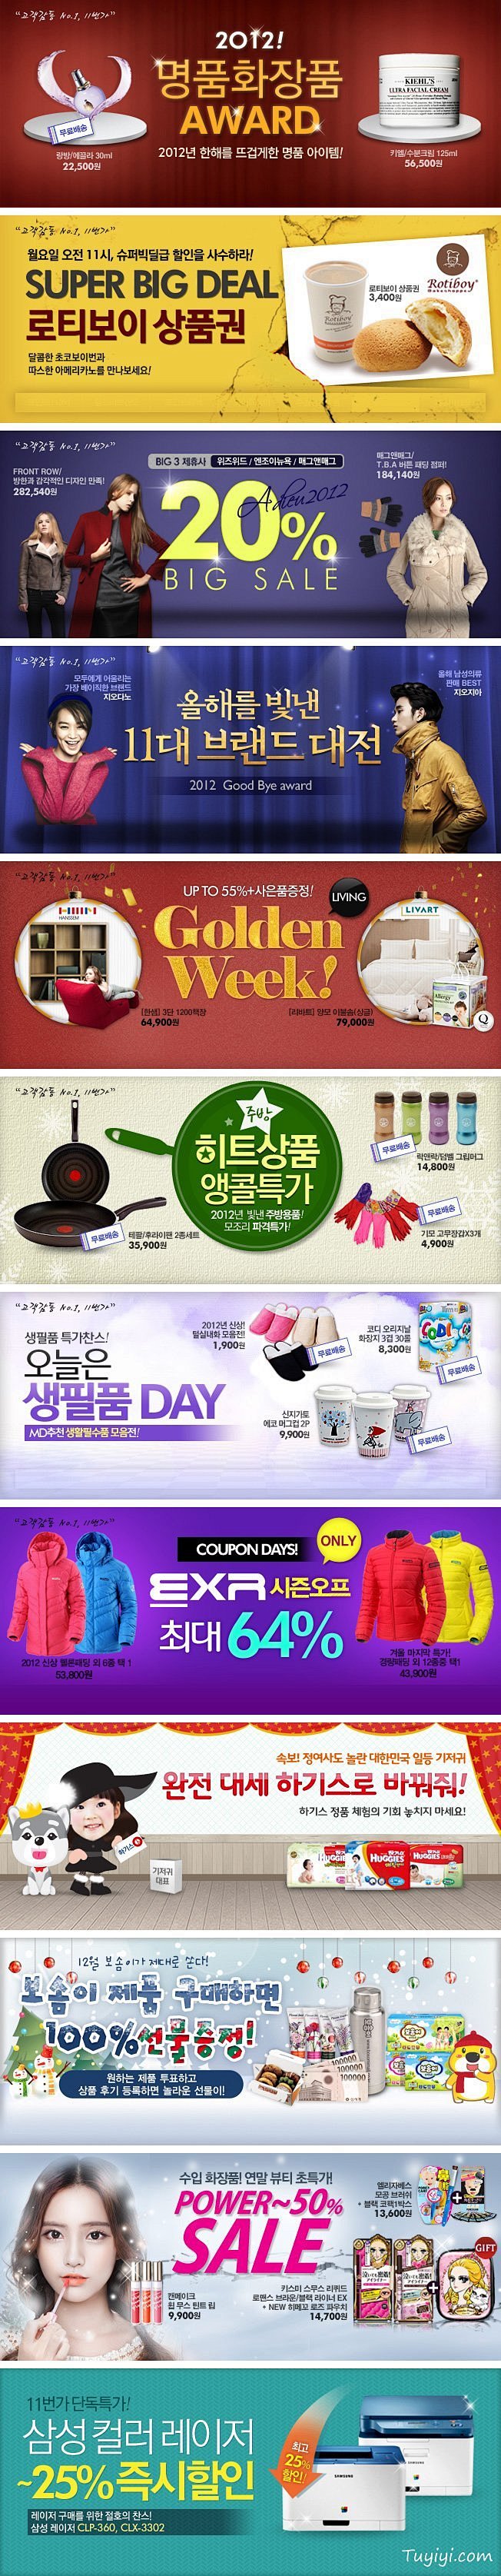 韩国购物网站Banner设计欣赏1227...